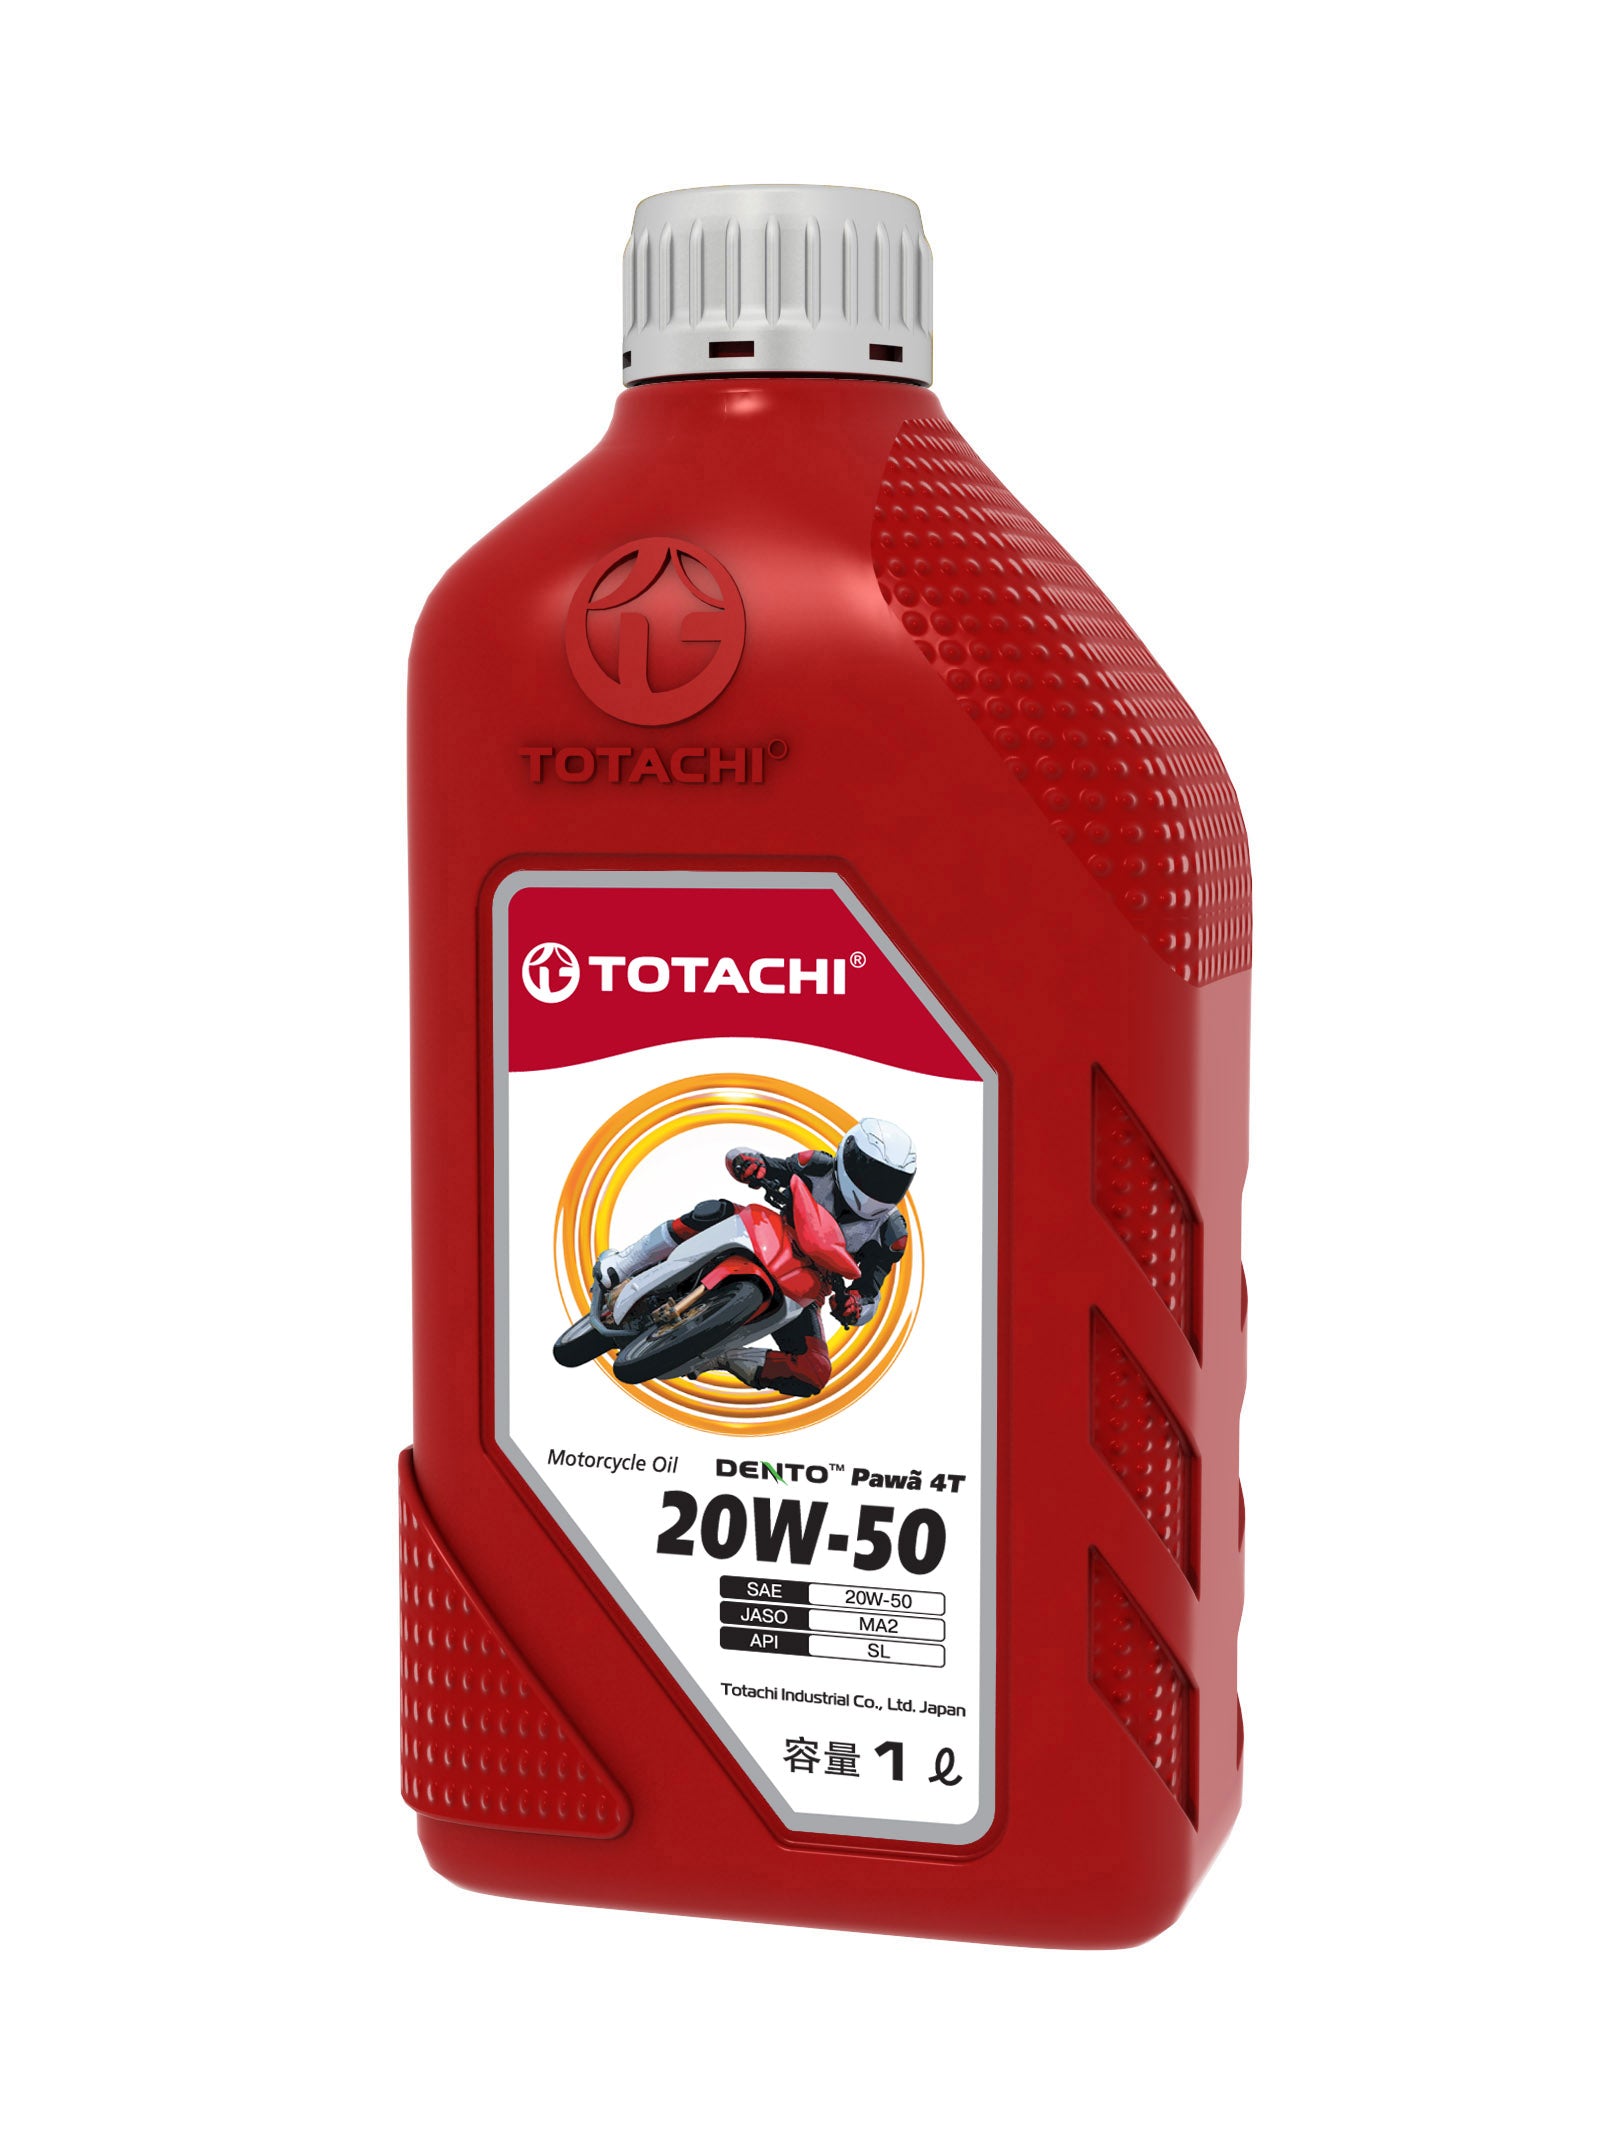 Totachi Motorcycle 20W-50 SL 0.7L